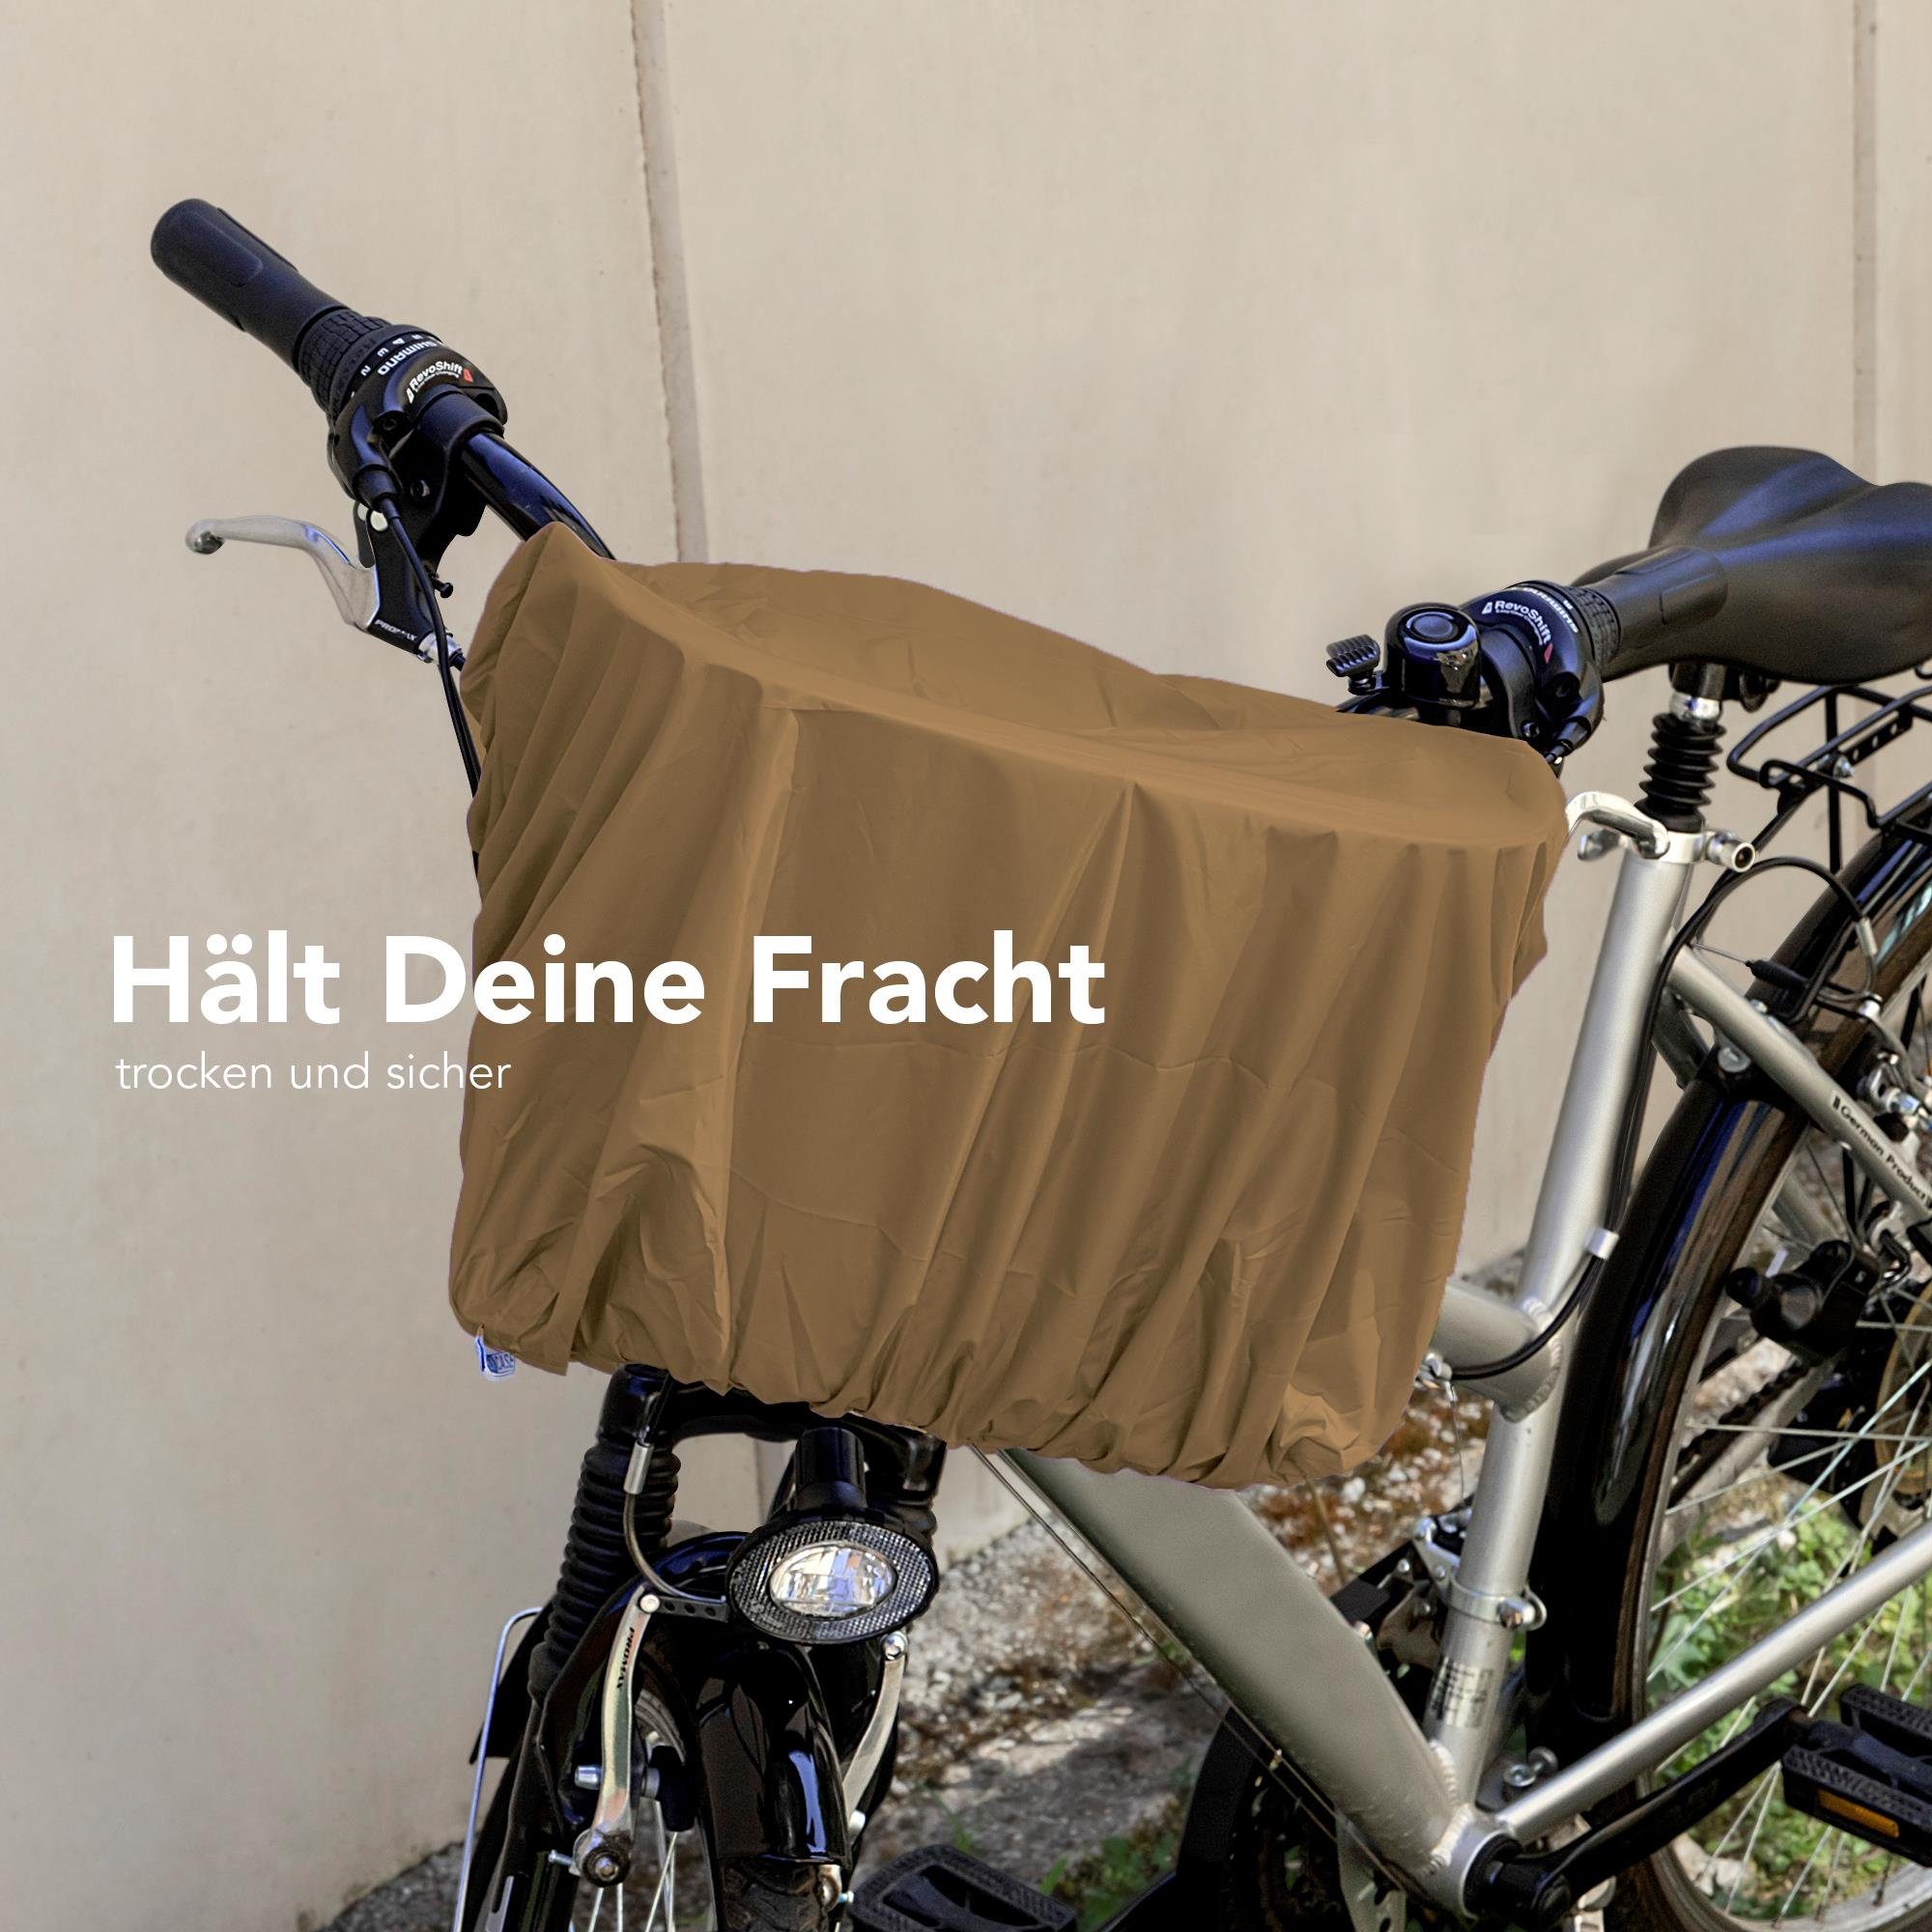 Braun CASE Regenschutz Überzug Regen Korbschutz elastisch wasserdicht Universal Korb, EAZY Regenschutzhaube für Fahrradkorb